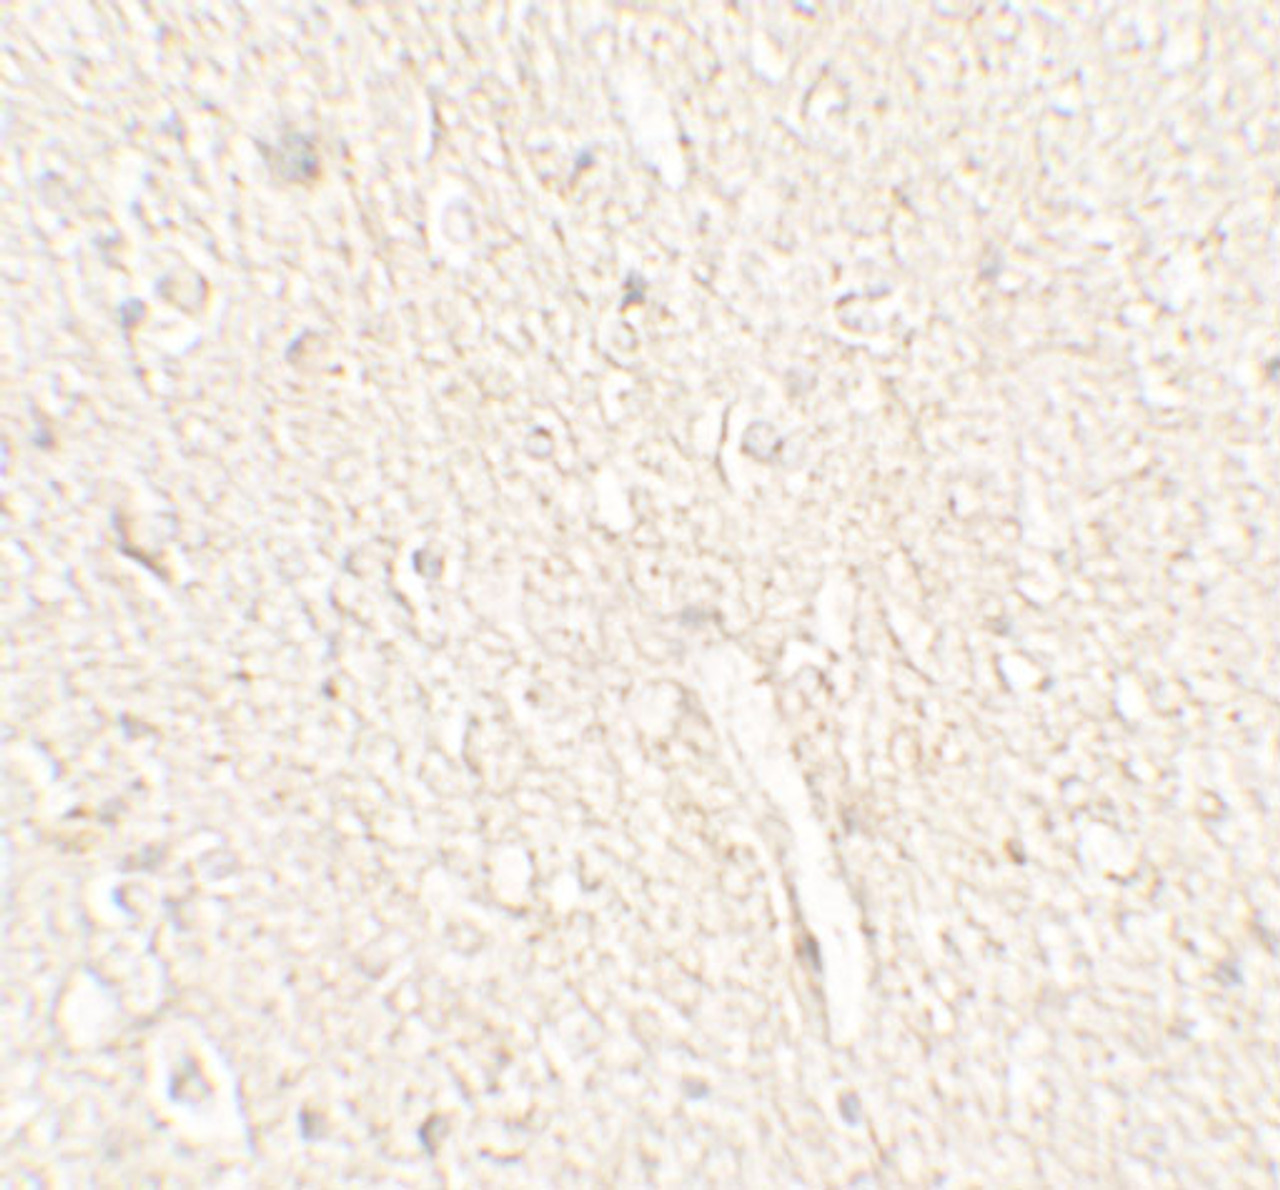 Immunohistochemistry of ADROPIN in human brain tissue with ADROPIN antibody at 5 ug/mL.